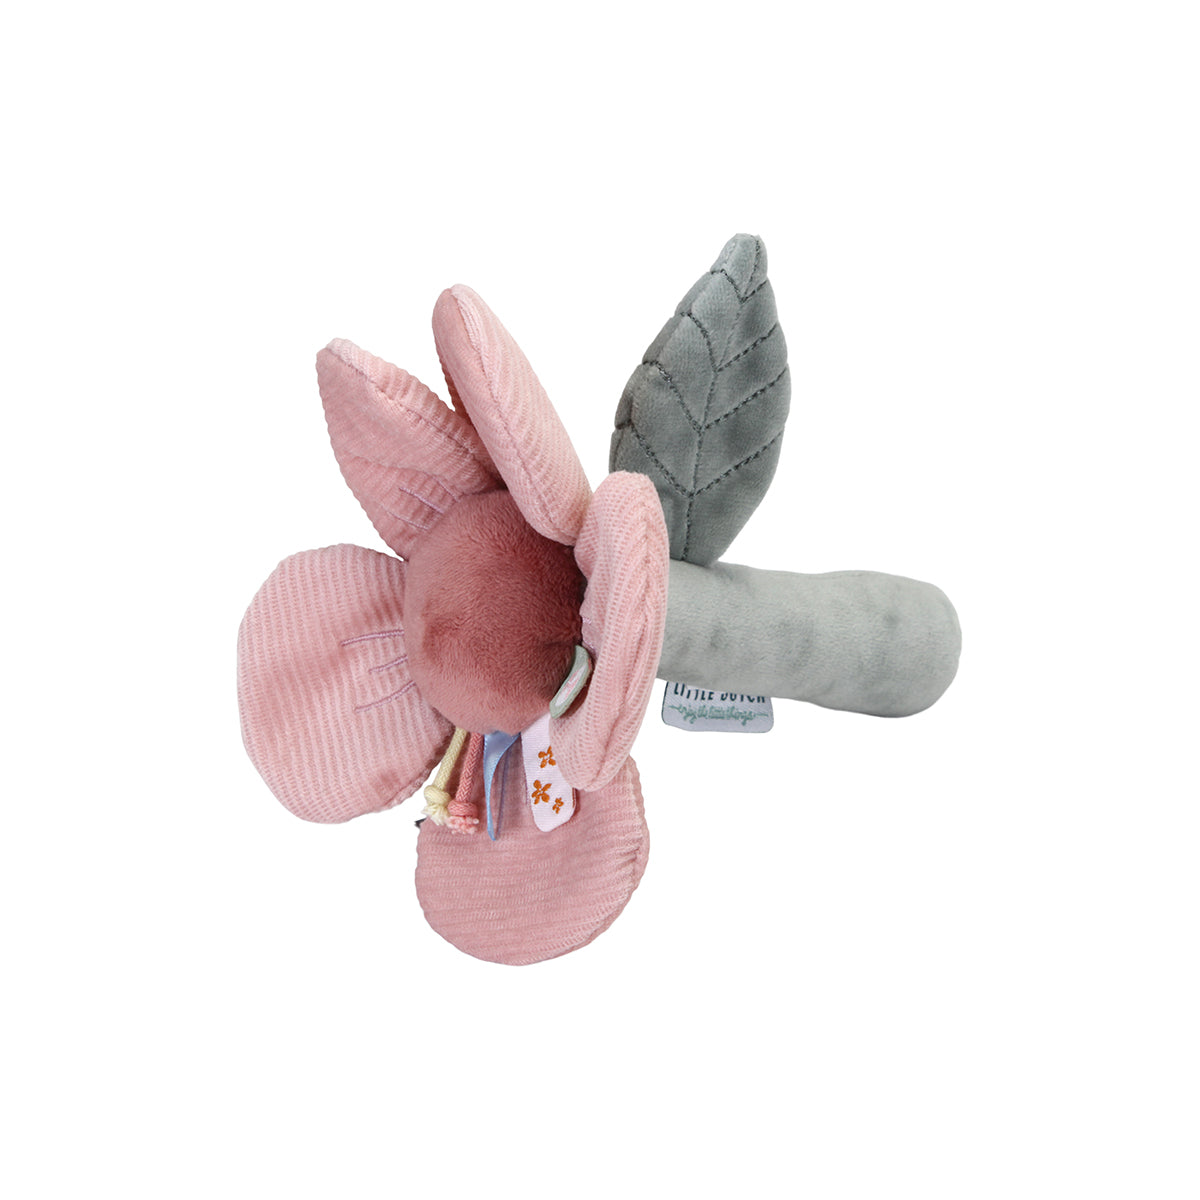 Hoe schattig is deze zachte bloem rammelaar van het merk Little Dutch? Het roze speeltje is versierd met prachtige labels, corduroy blaadjes en kleurrijke touwknoopjes. Ook maakt de rammelaar een ratelend geluid. VanZus